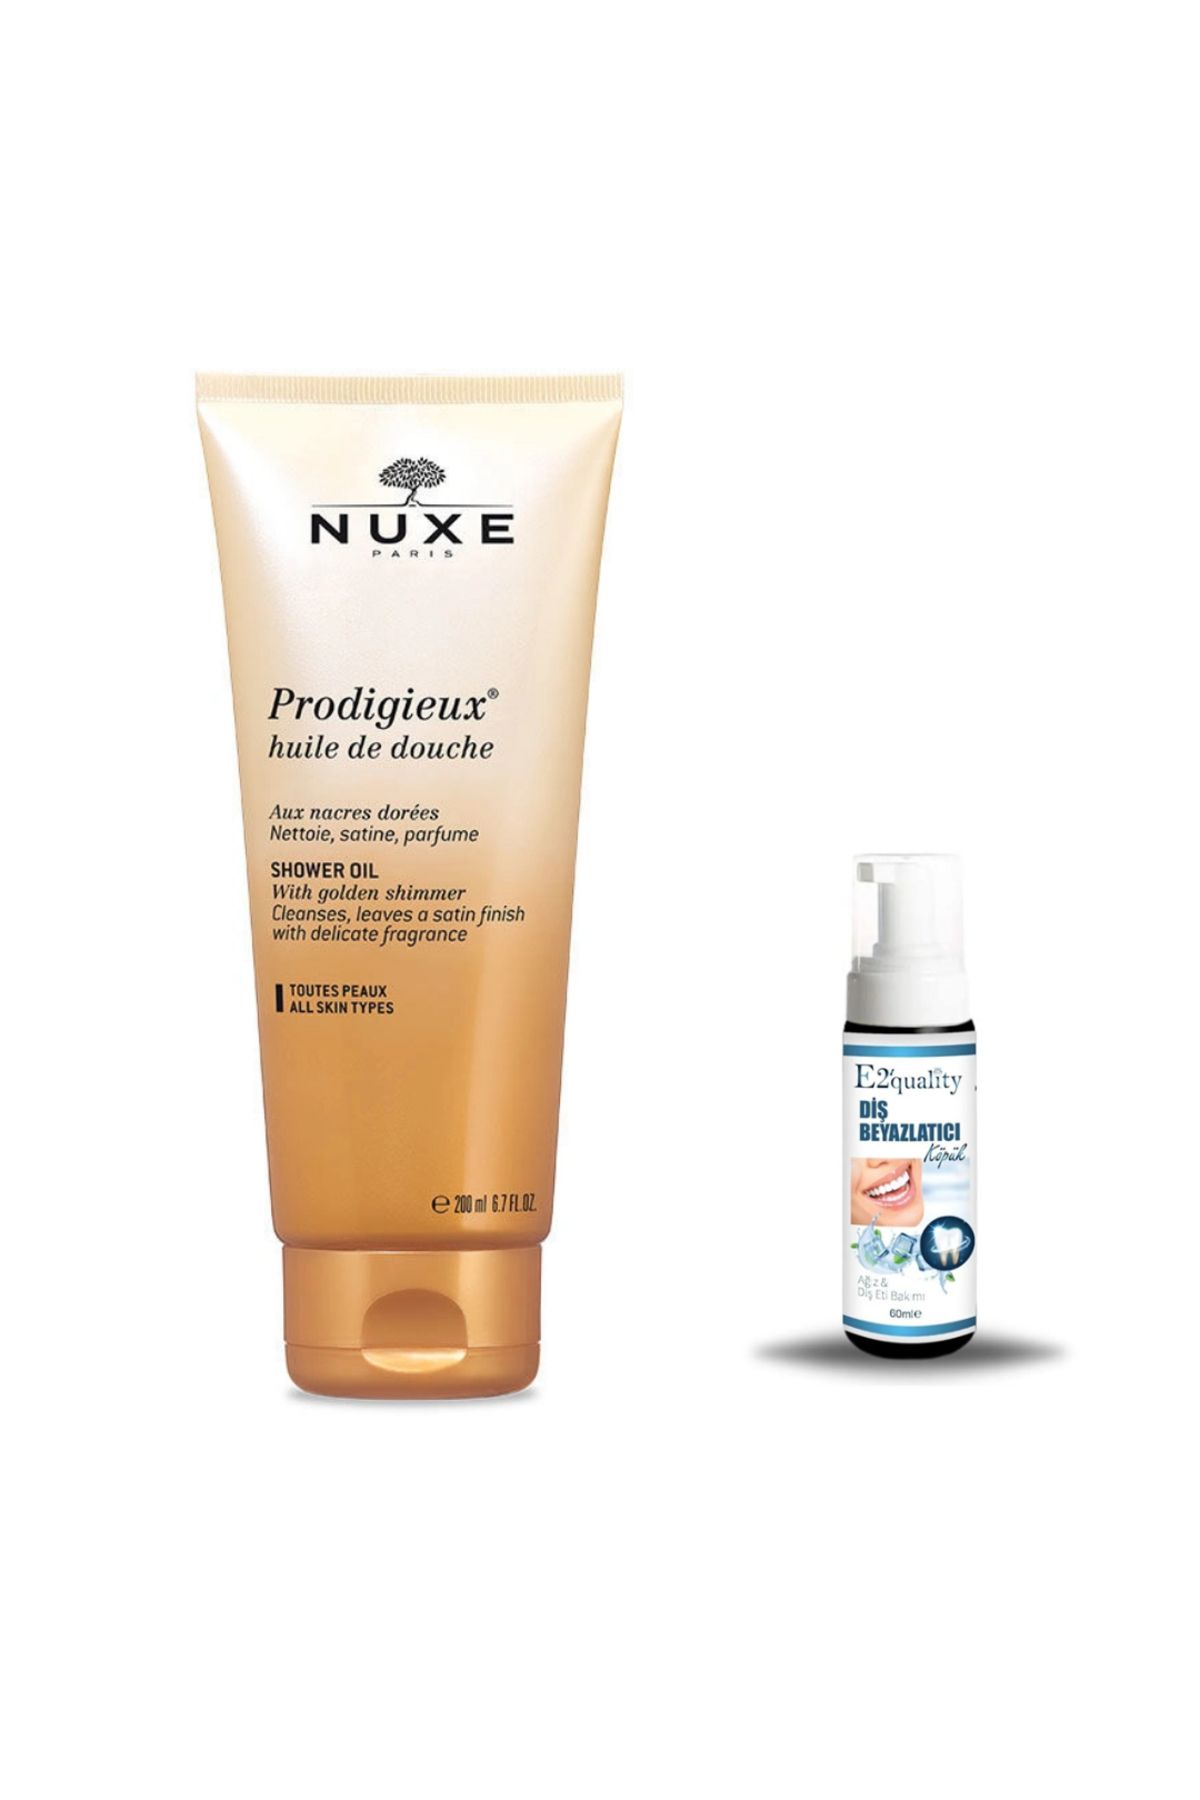 Nuxe Prodigieux Duş Yağı 200ml + Hediye Diş Beyazlatıcı Köpük